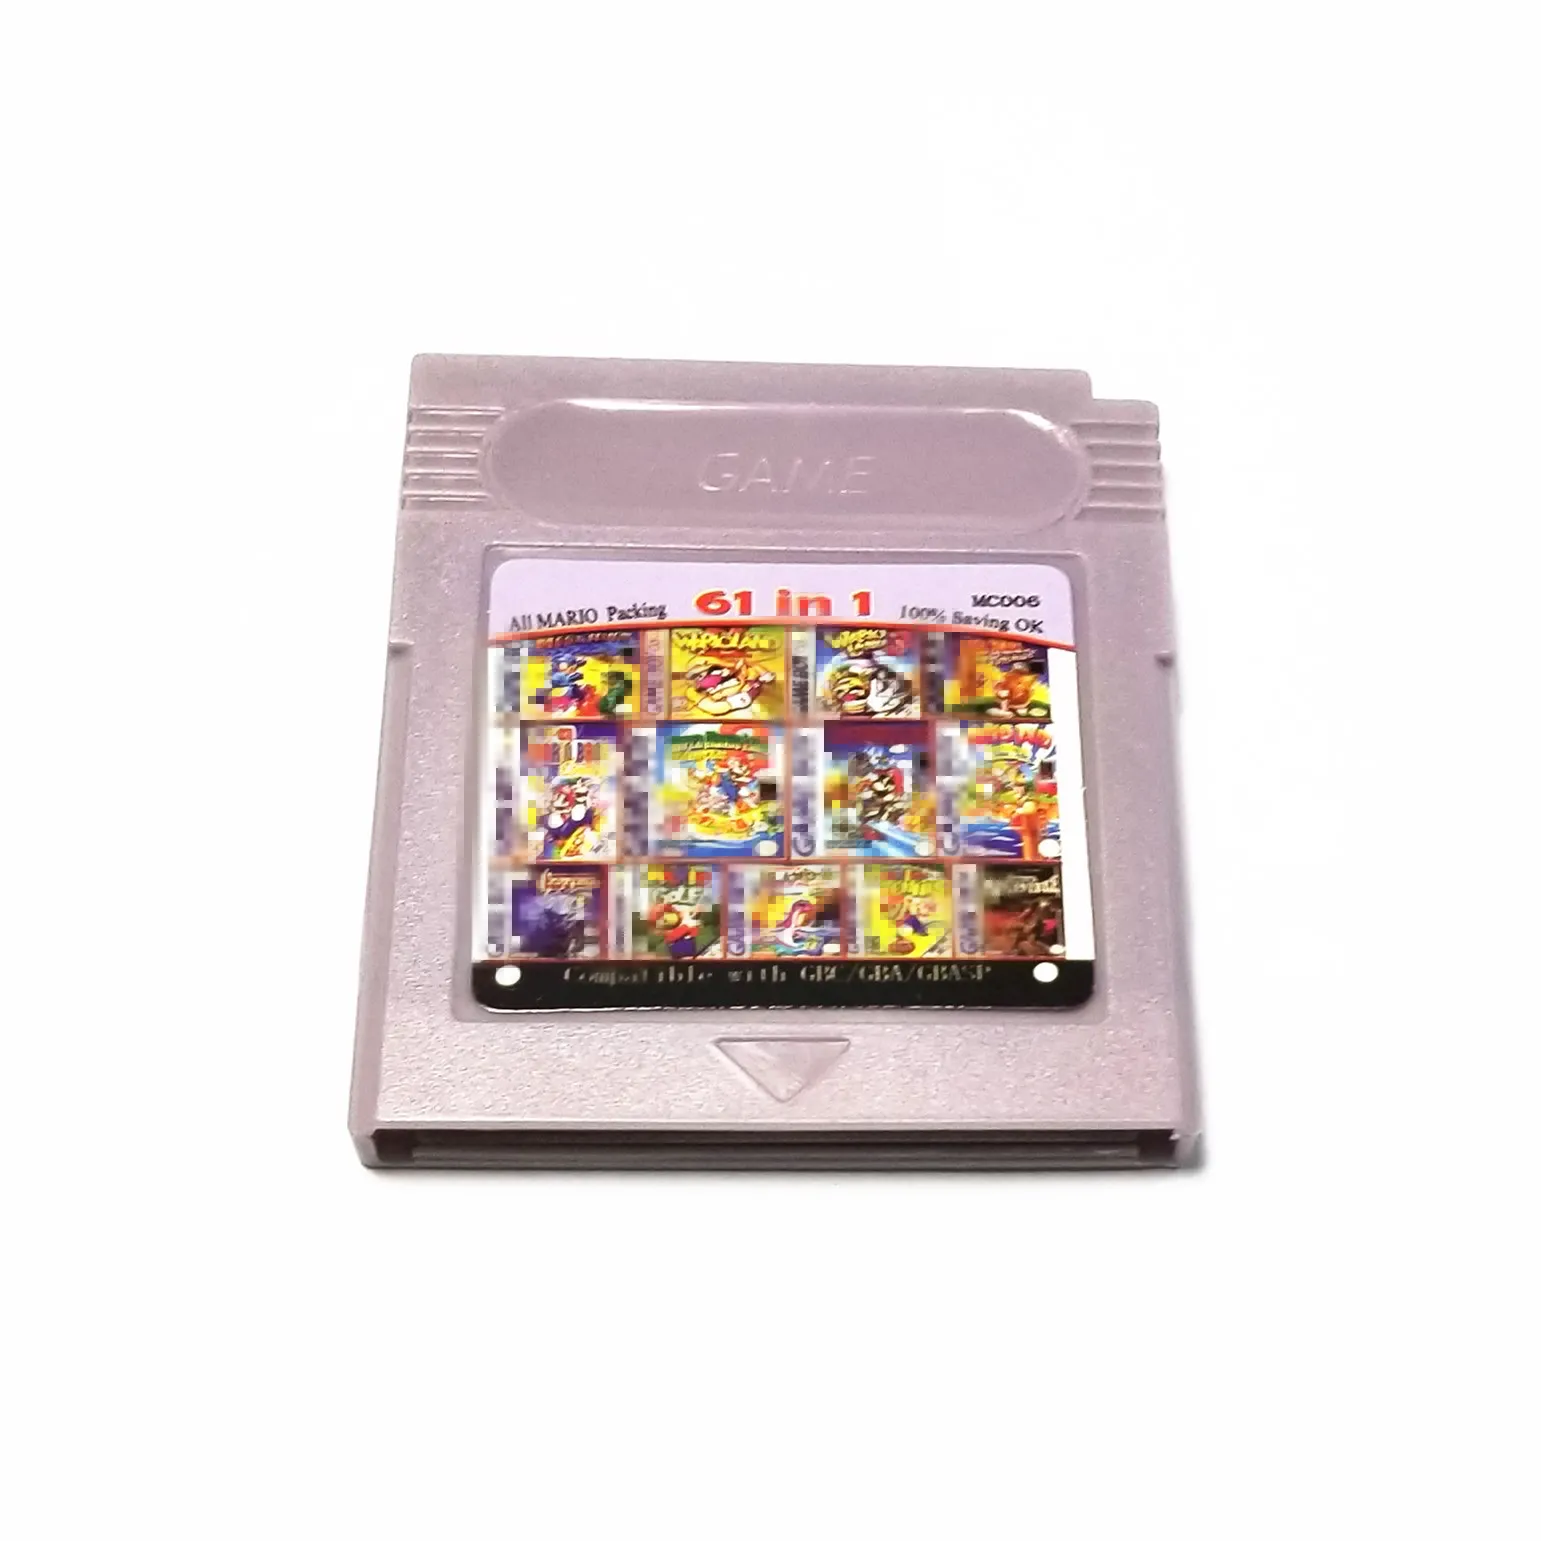 61/108 in 1 Game Cartridge 8/32bit Games Card für Nintendo GBC für GB Series Videospiel Console Englische Version